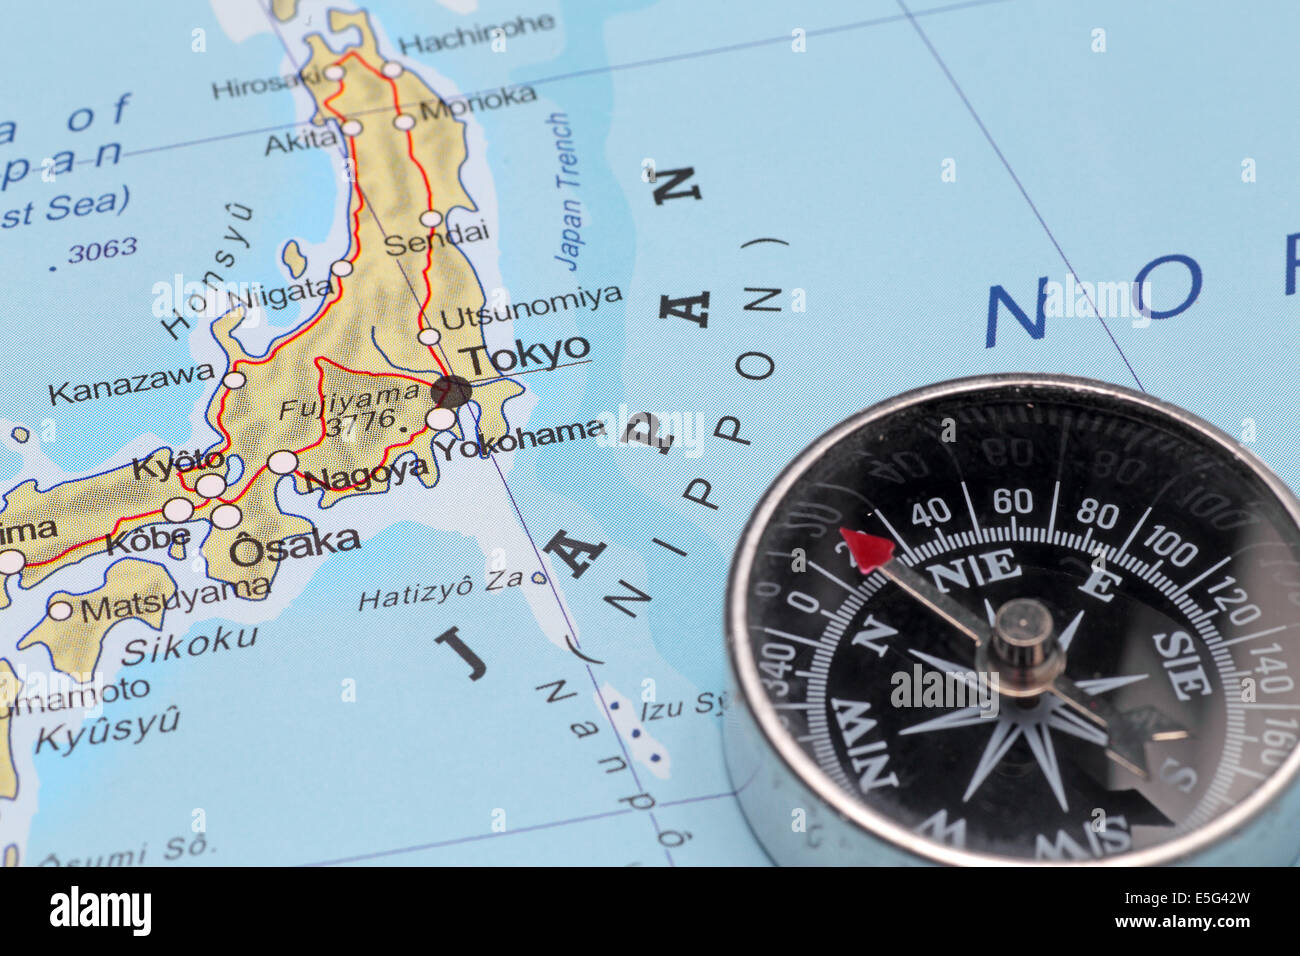 Boussole sur une carte indiquant au Japon et préparez un voyage avec destination Tokyo Banque D'Images